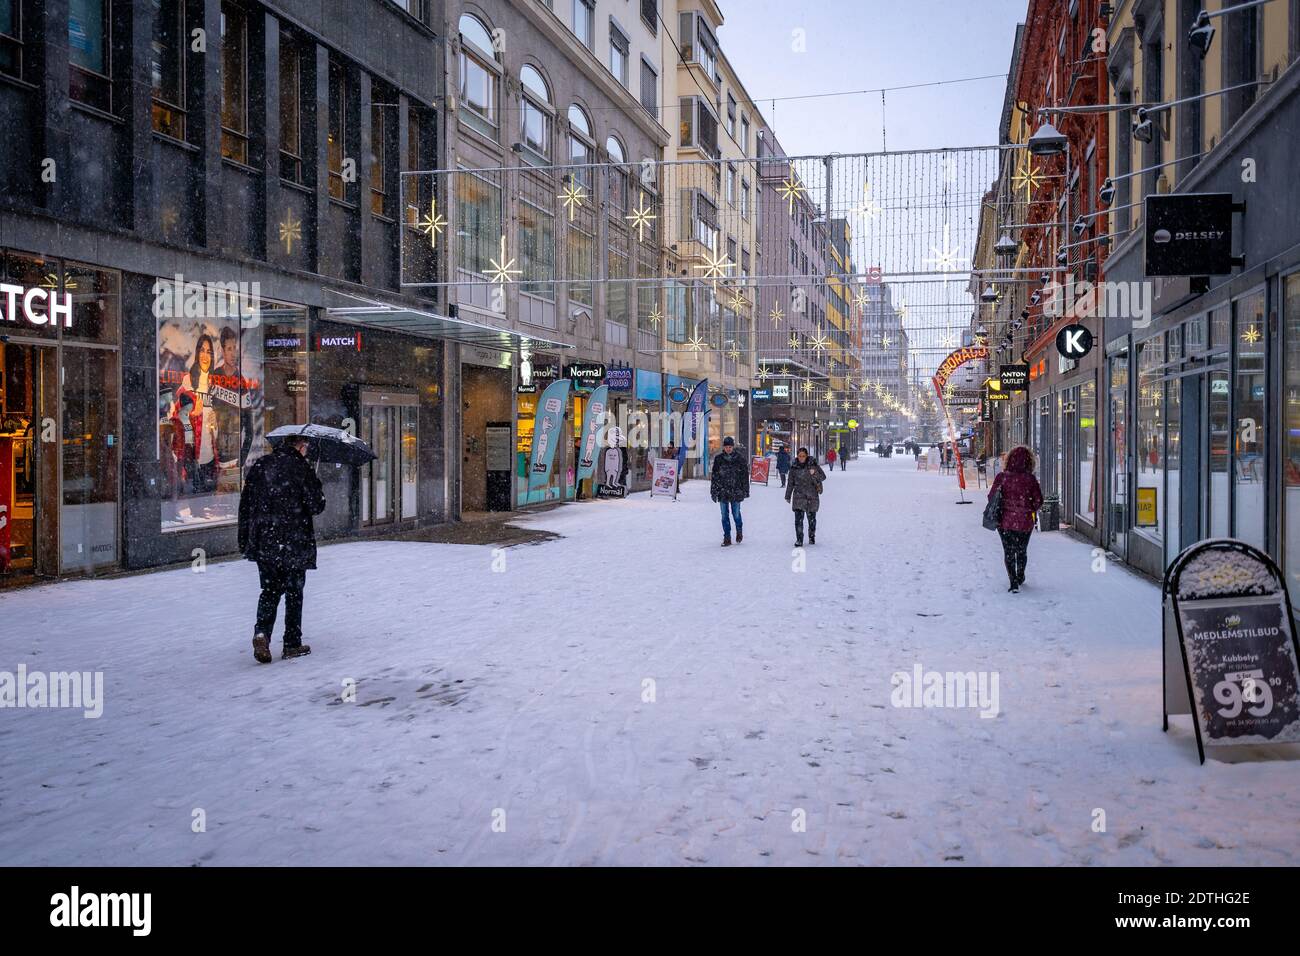 Oslo, Norvège - rue de ville couverte de neige avec décorations de Noël Banque D'Images